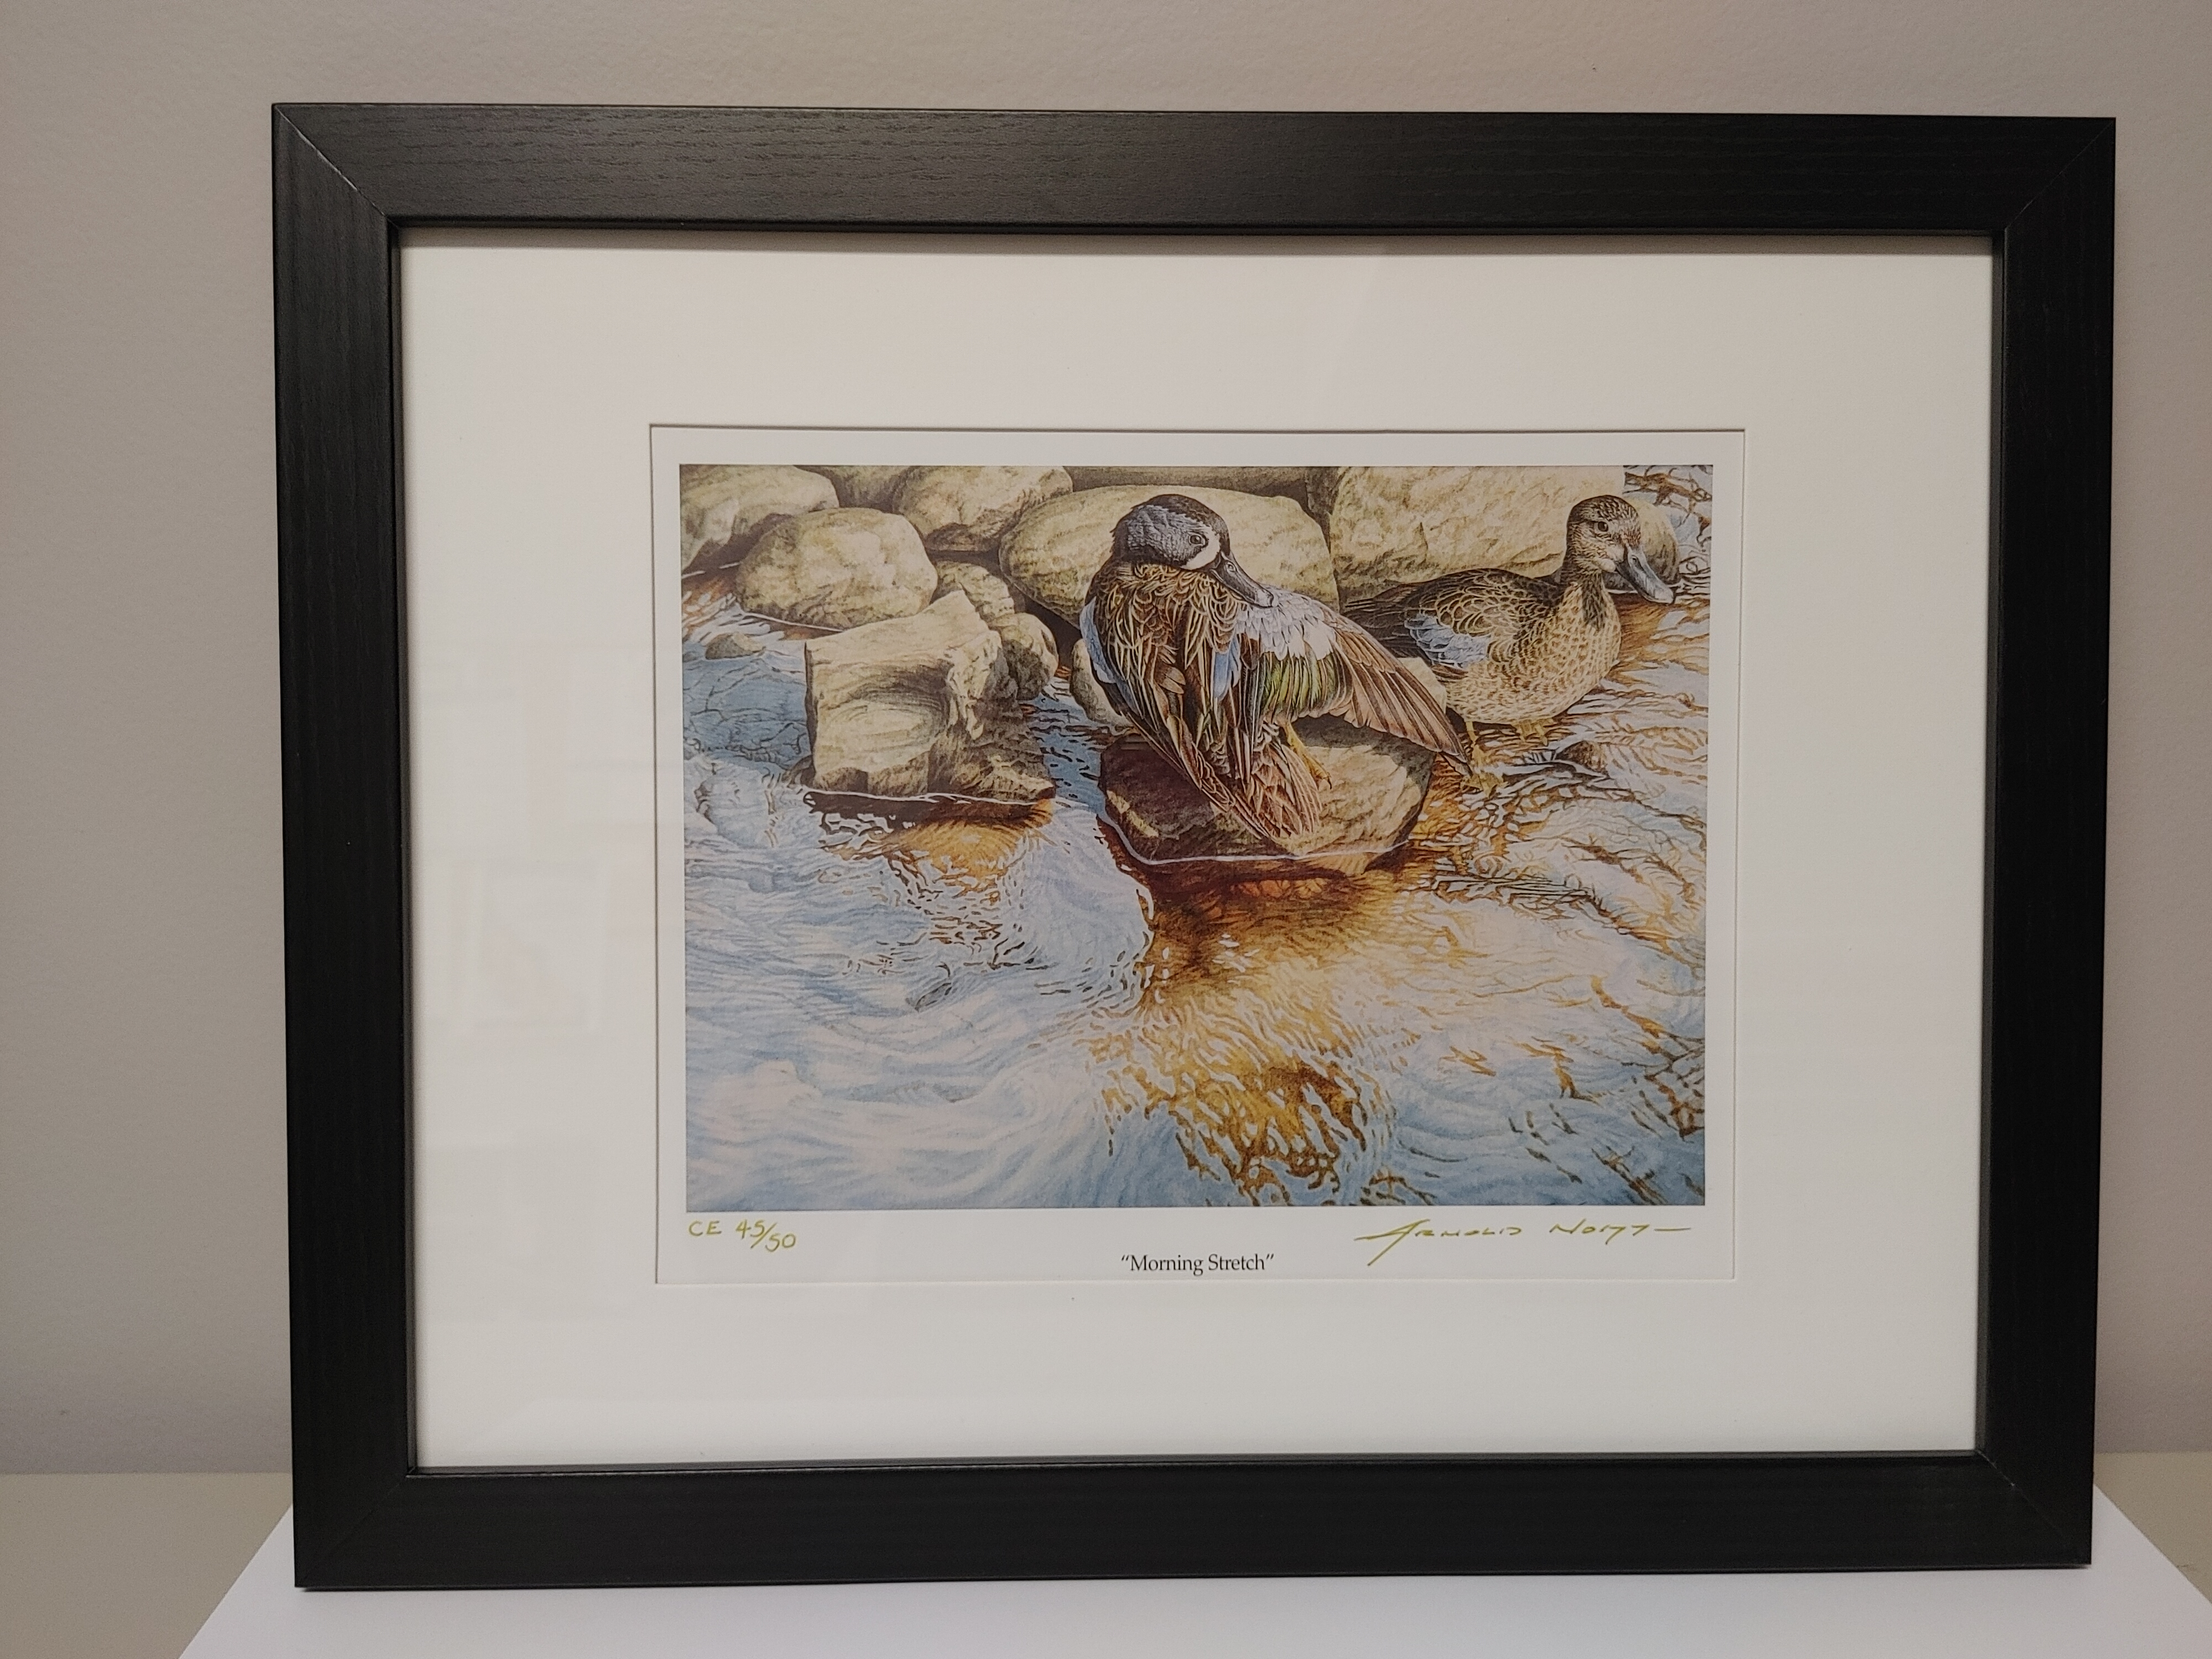 Framed art print of two ducks by shoreline